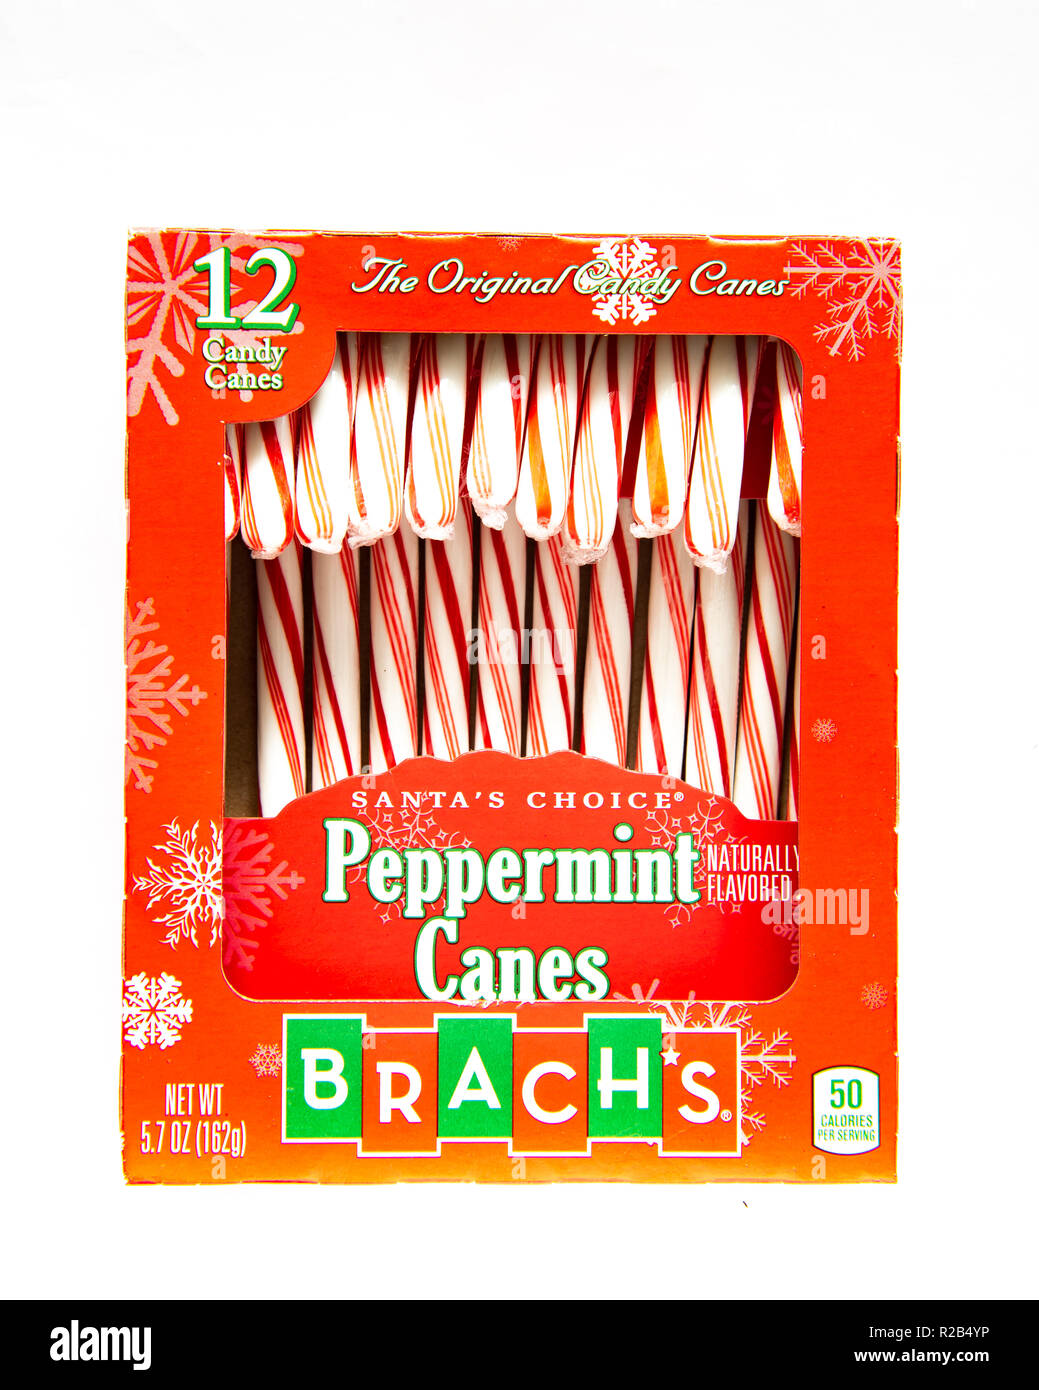 Une boîte rouge de 12 Brach's Peppermint Candy canes, un traitement traditionnel pour la saison de Noël Banque D'Images